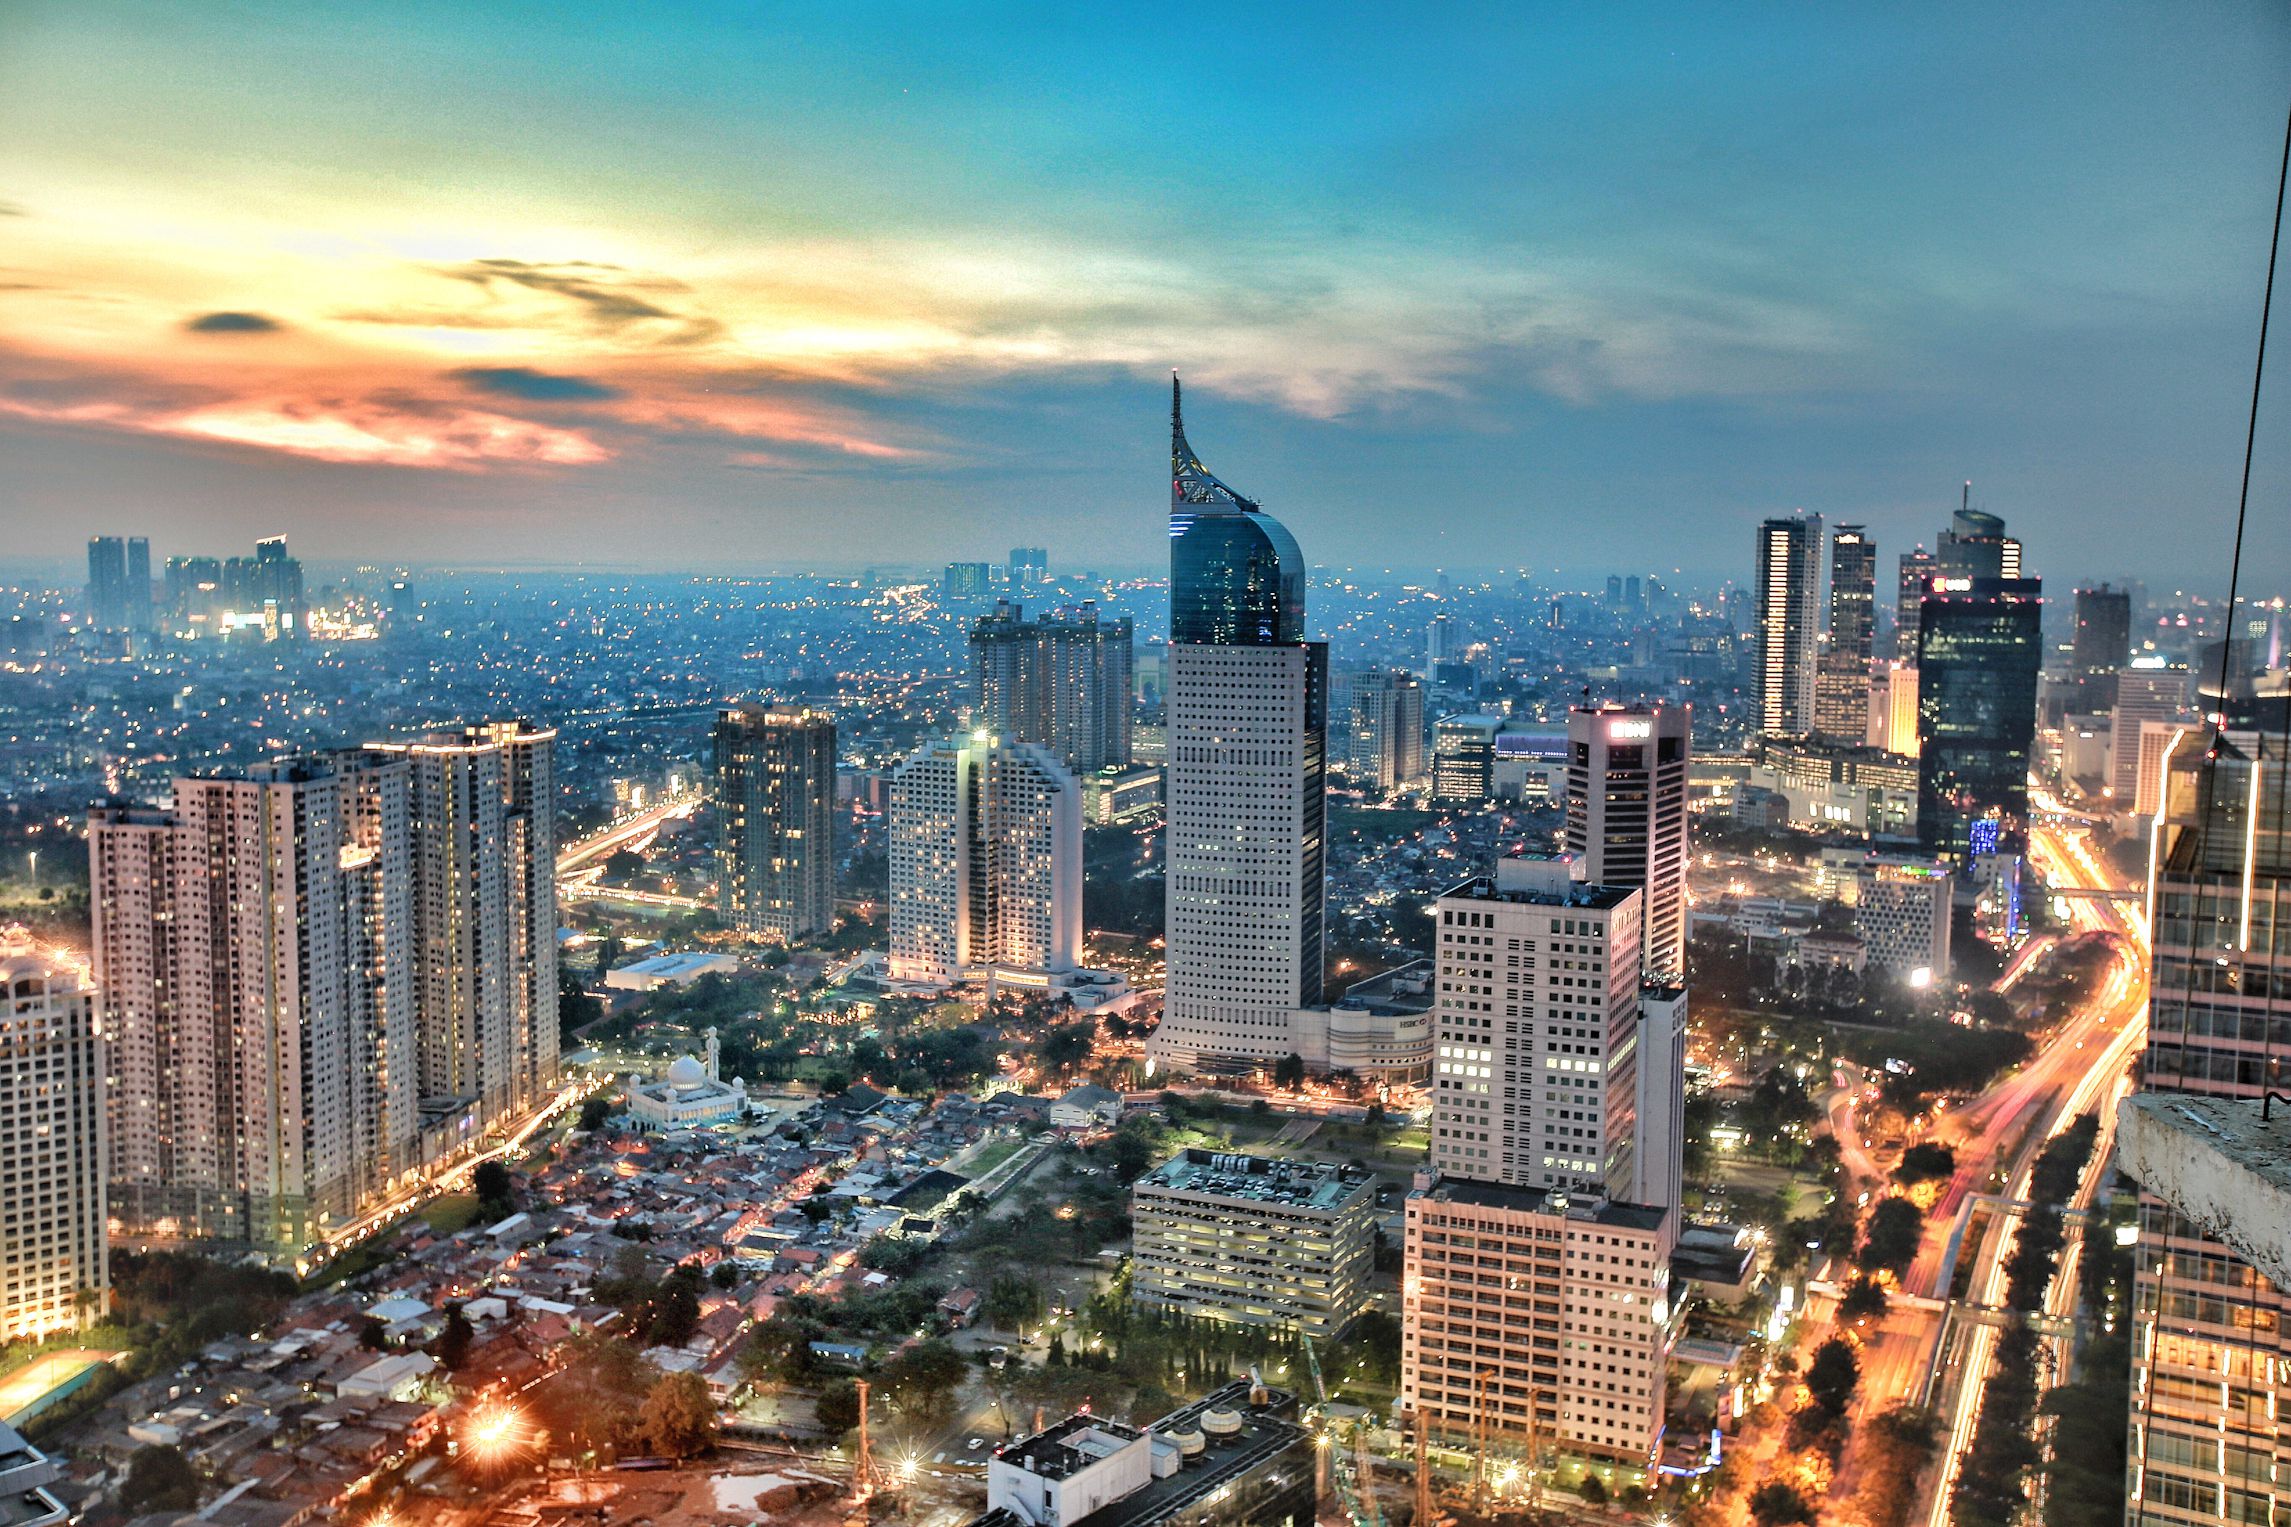 Indonézia a 2036-os olimpiára pályázik, de nem Dzsakarta, hanem az új főváros Nusantara lenne a helyszín (Fotó: Getty Images)